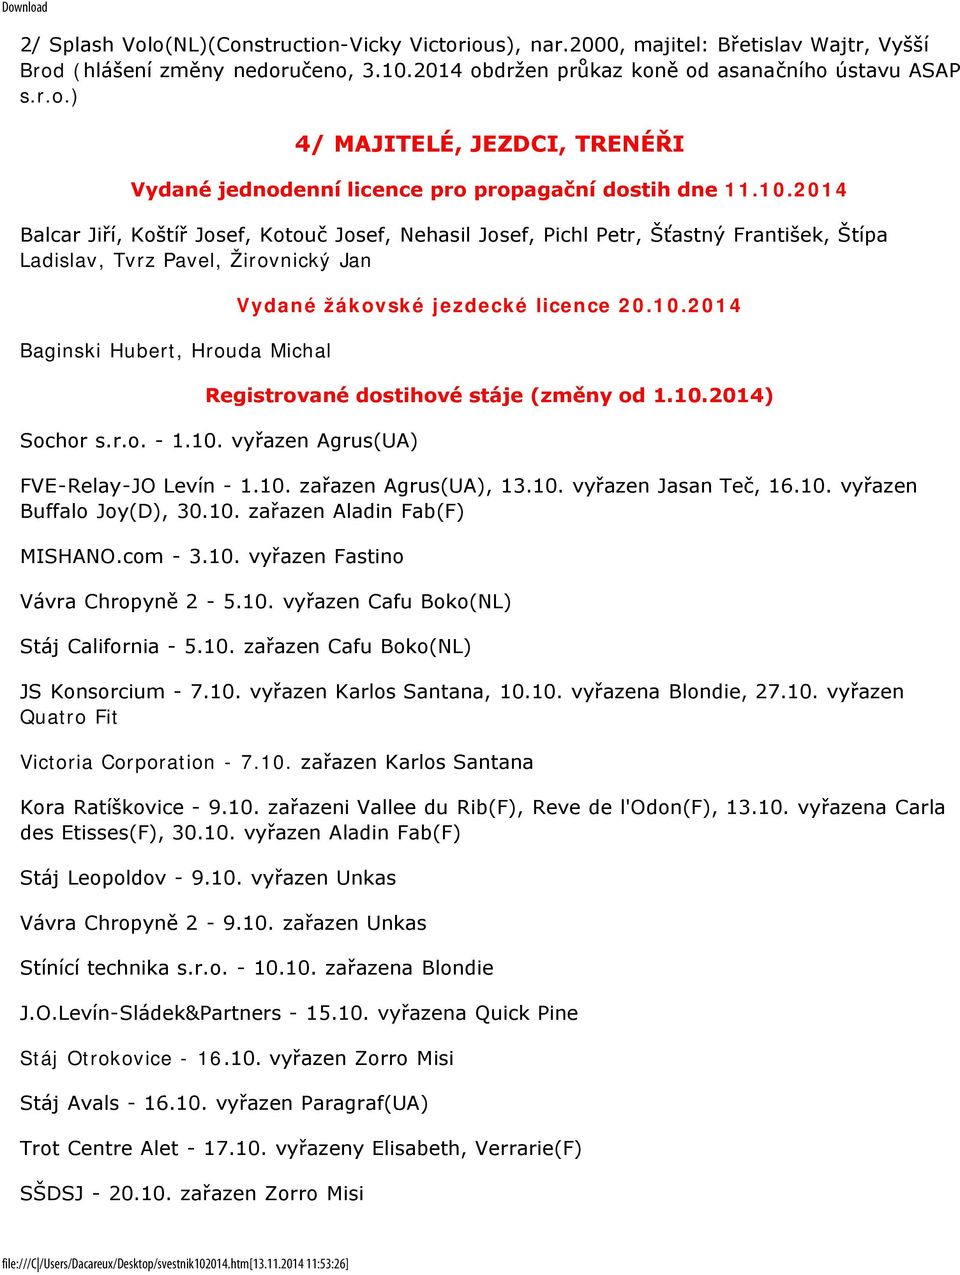 licence 20.10.2014 Registrované dostihové stáje (změny od 1.10.2014) Sochor s.r.o. - 1.10. vyřazen Agrus(UA) FVE-Relay-JO Levín - 1.10. zařazen Agrus(UA), 13.10. vyřazen Jasan Teč, 16.10. vyřazen Buffalo Joy(D), 30.